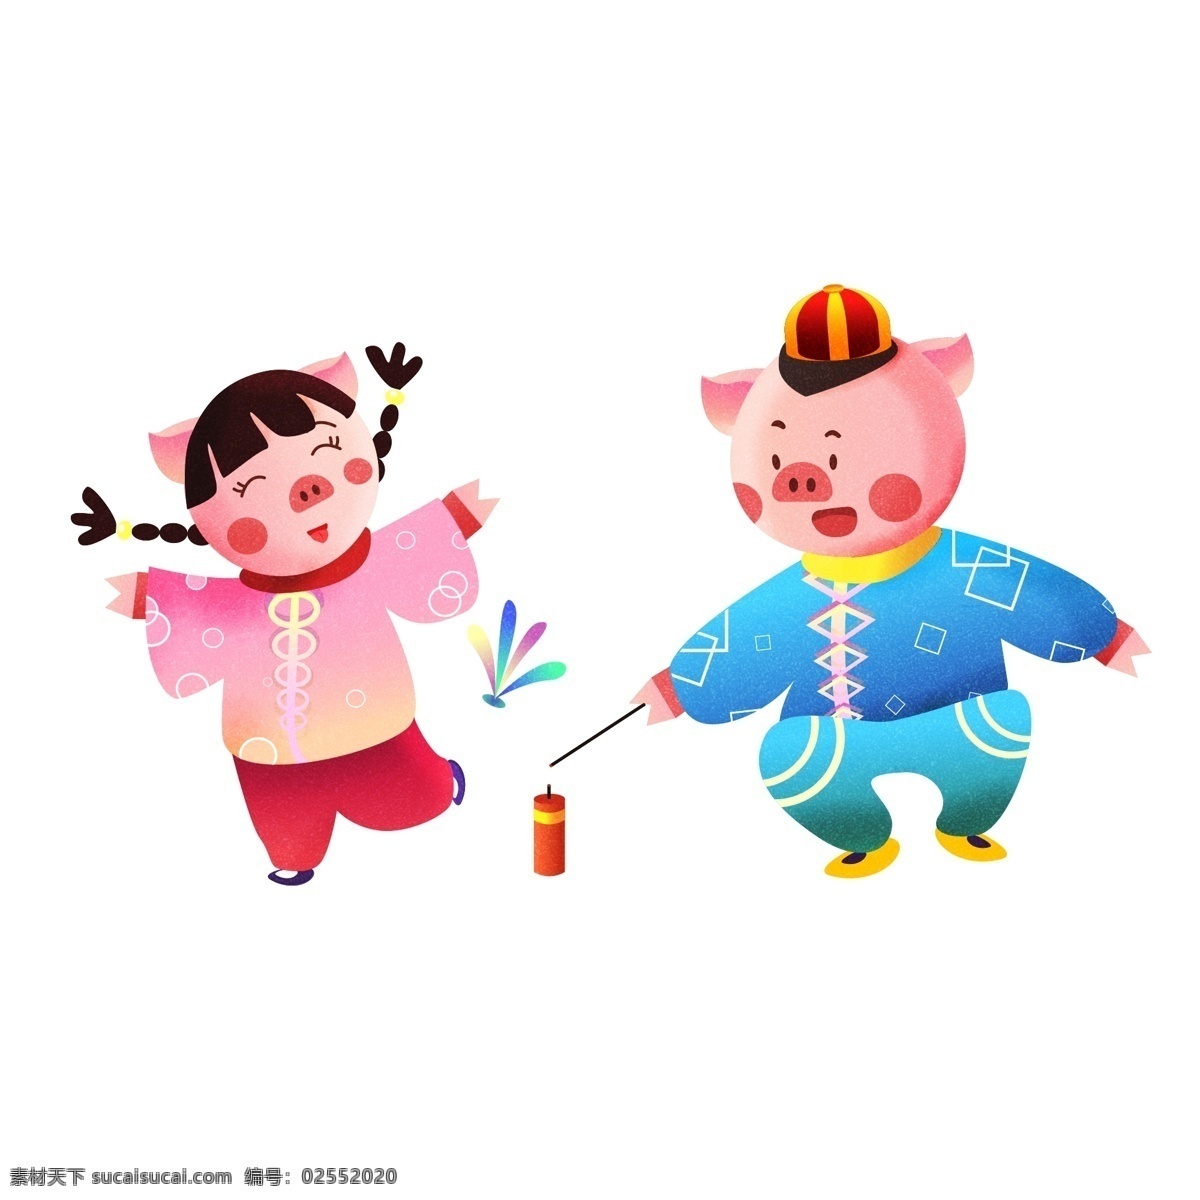 2019 春节 猪年 小 猪 上街 玩耍 原创 新年 喜庆 可爱 生肖 男女 小猪 卡通 踢毽子 放鞭炮